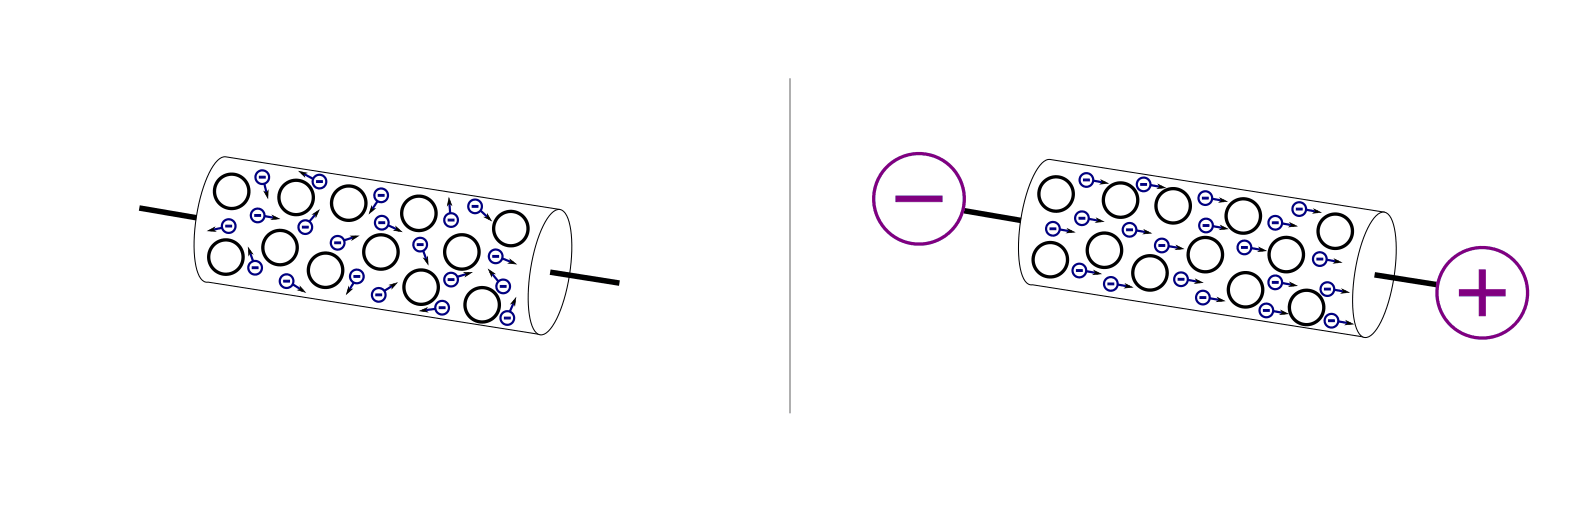 fig-spannung-elektronenmodell